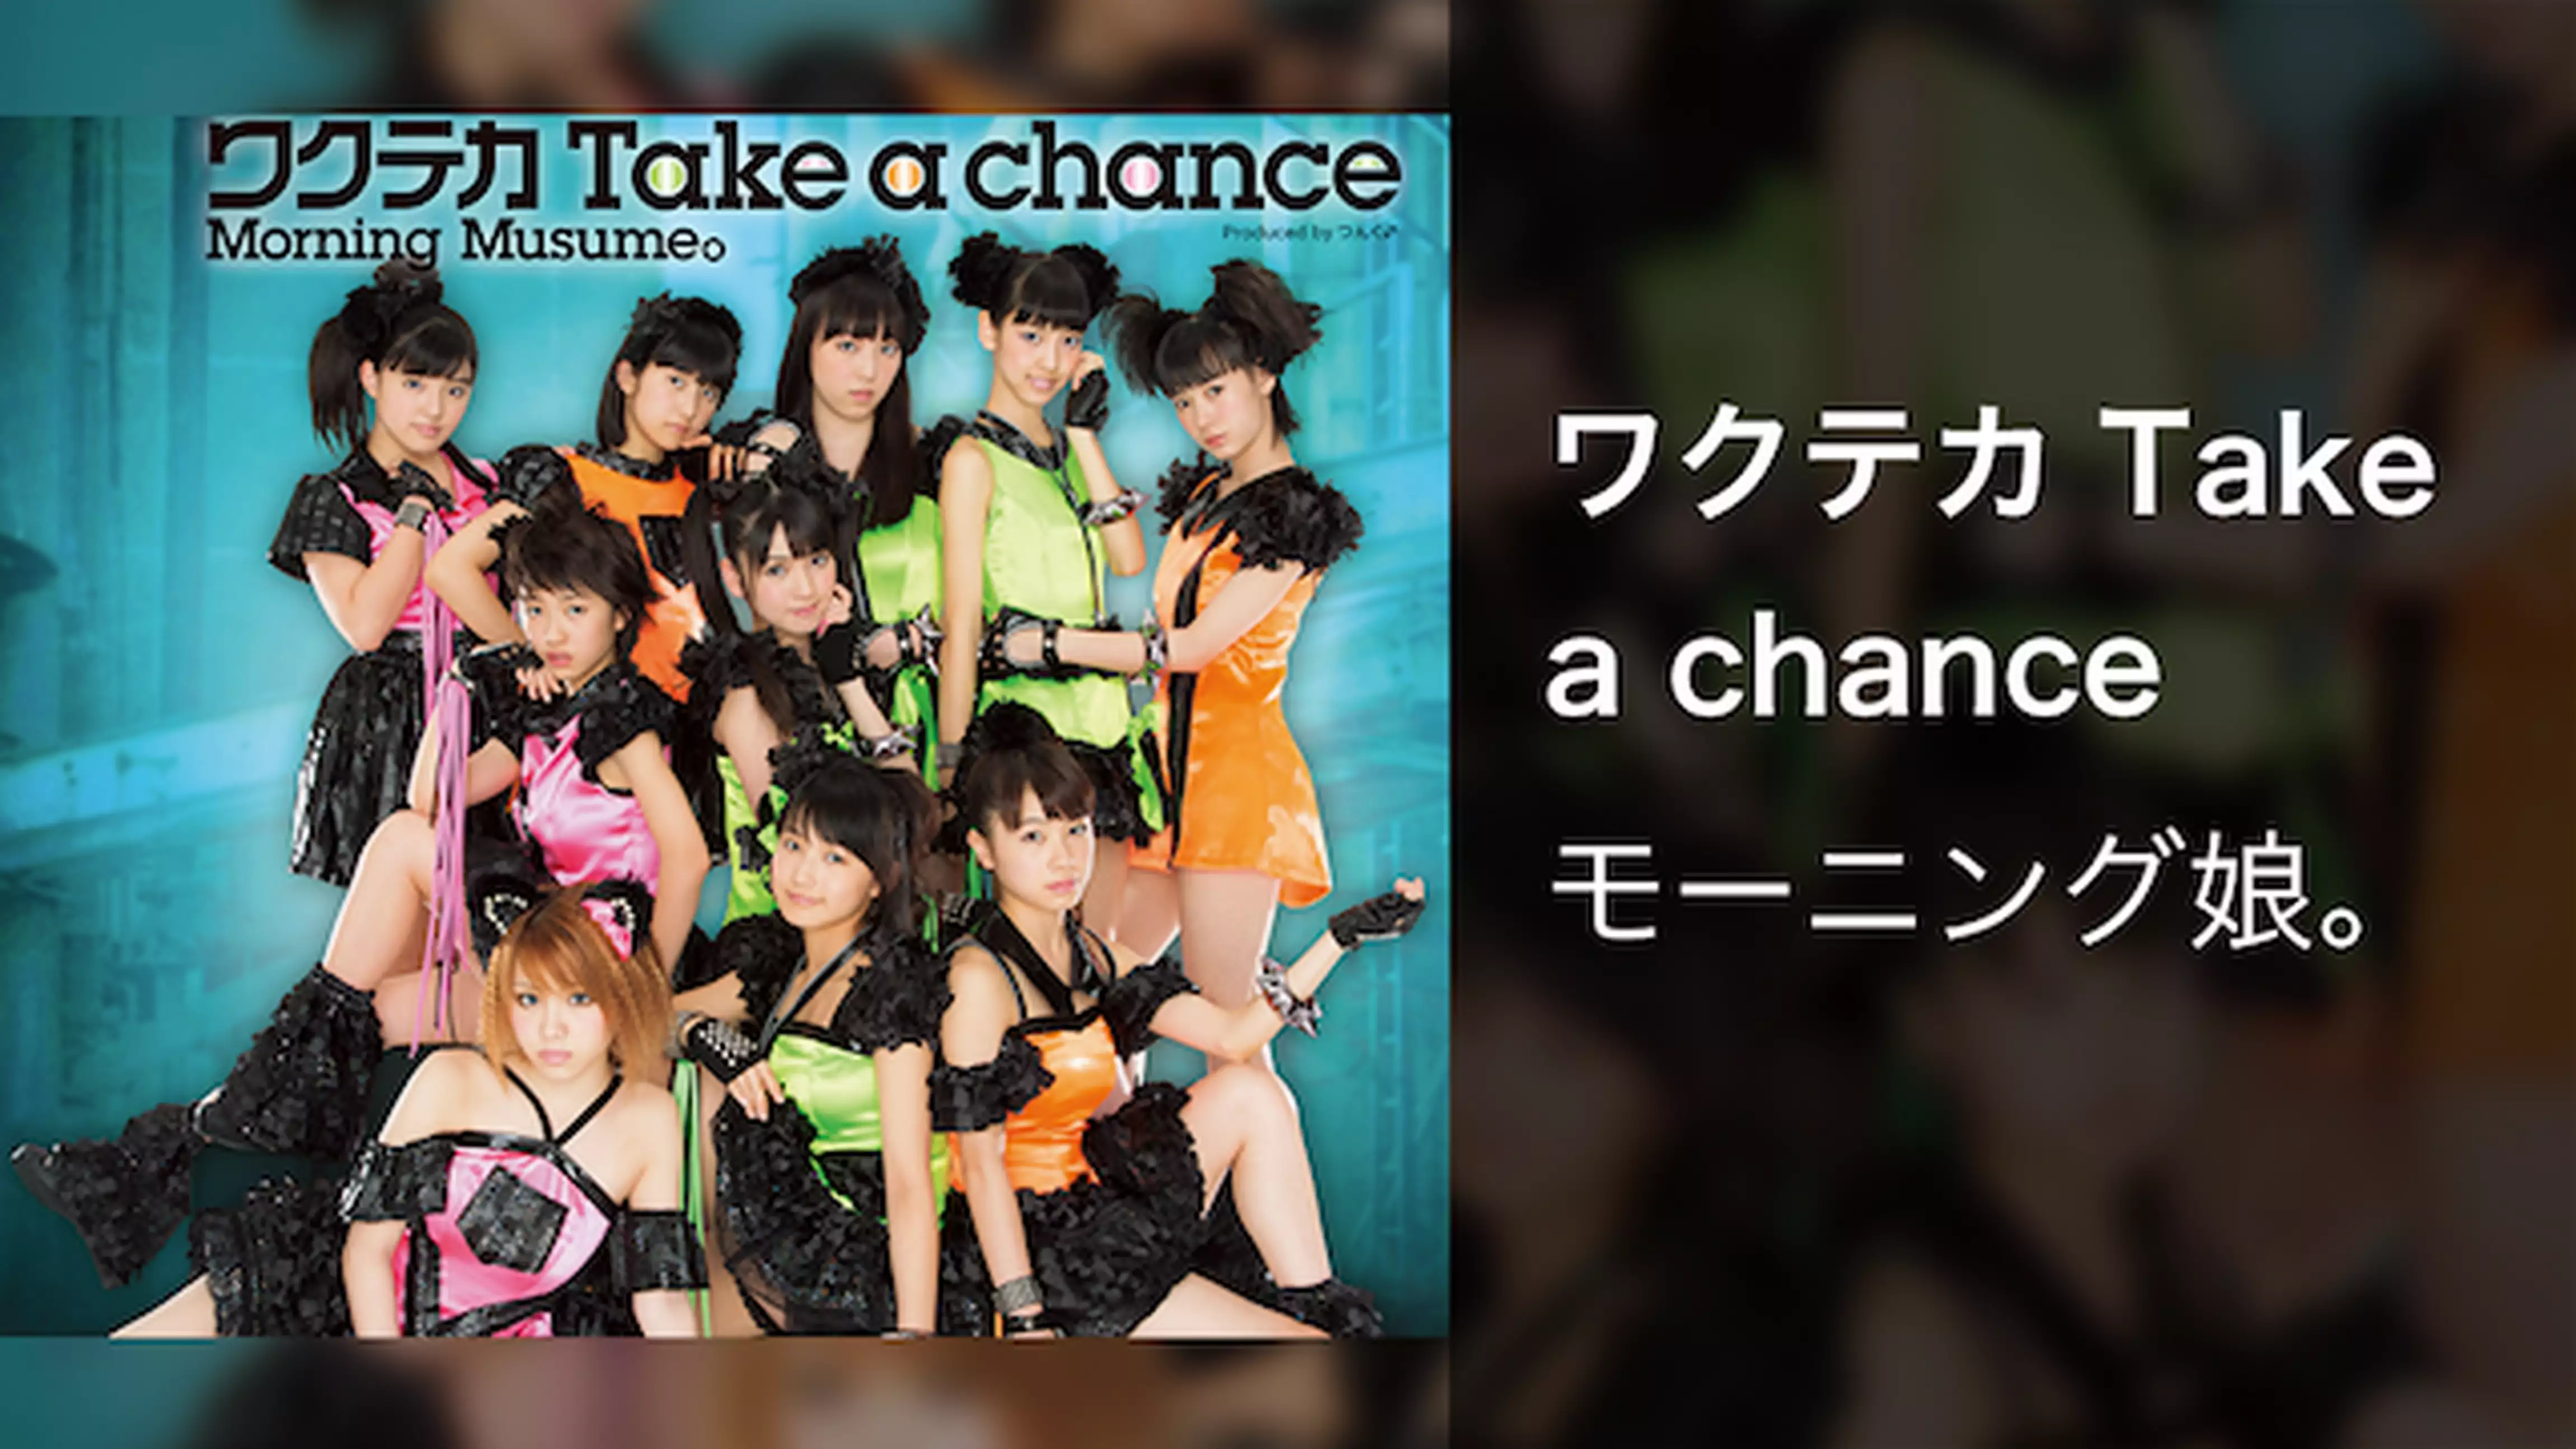 モーニング娘。 『ワクテカ Take a chance』 (MV)